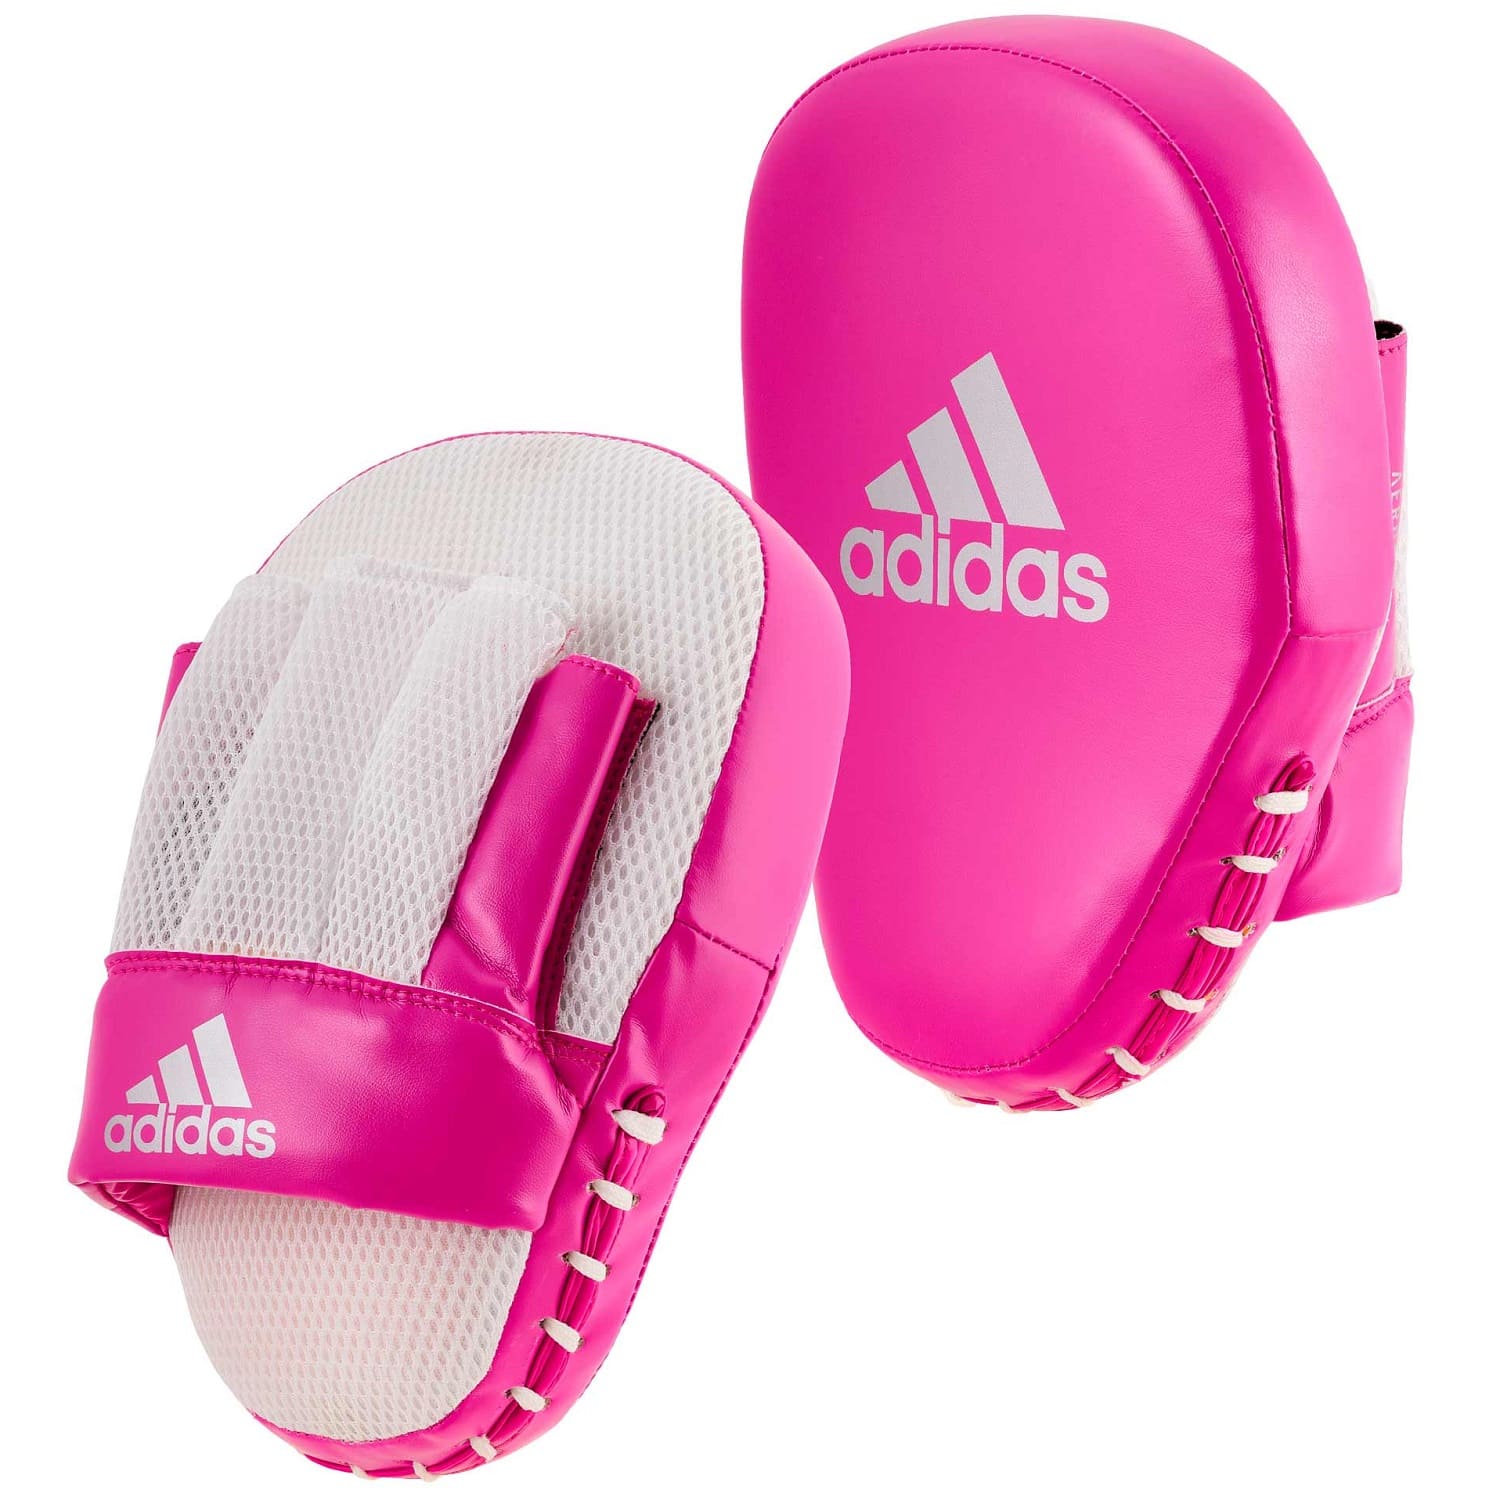 Coach Adidas | Speed EMPAROR Handpratzen Online ✓ Pink/Silber kaufen